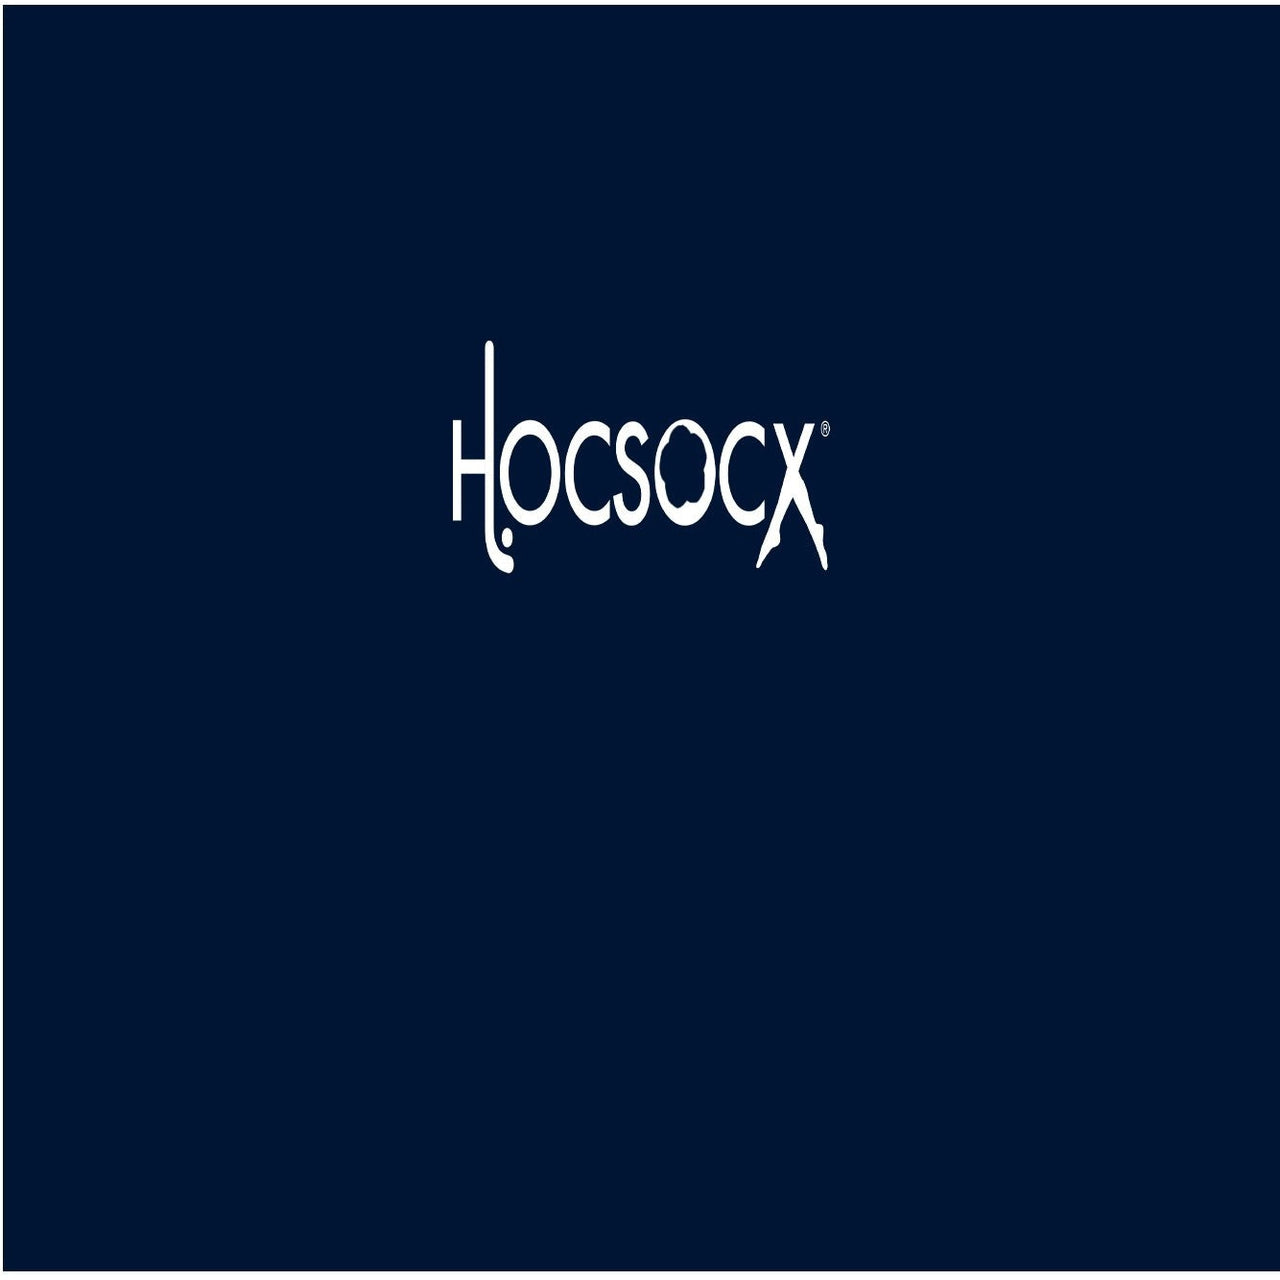 Navy Socks - Hocsocx Inc